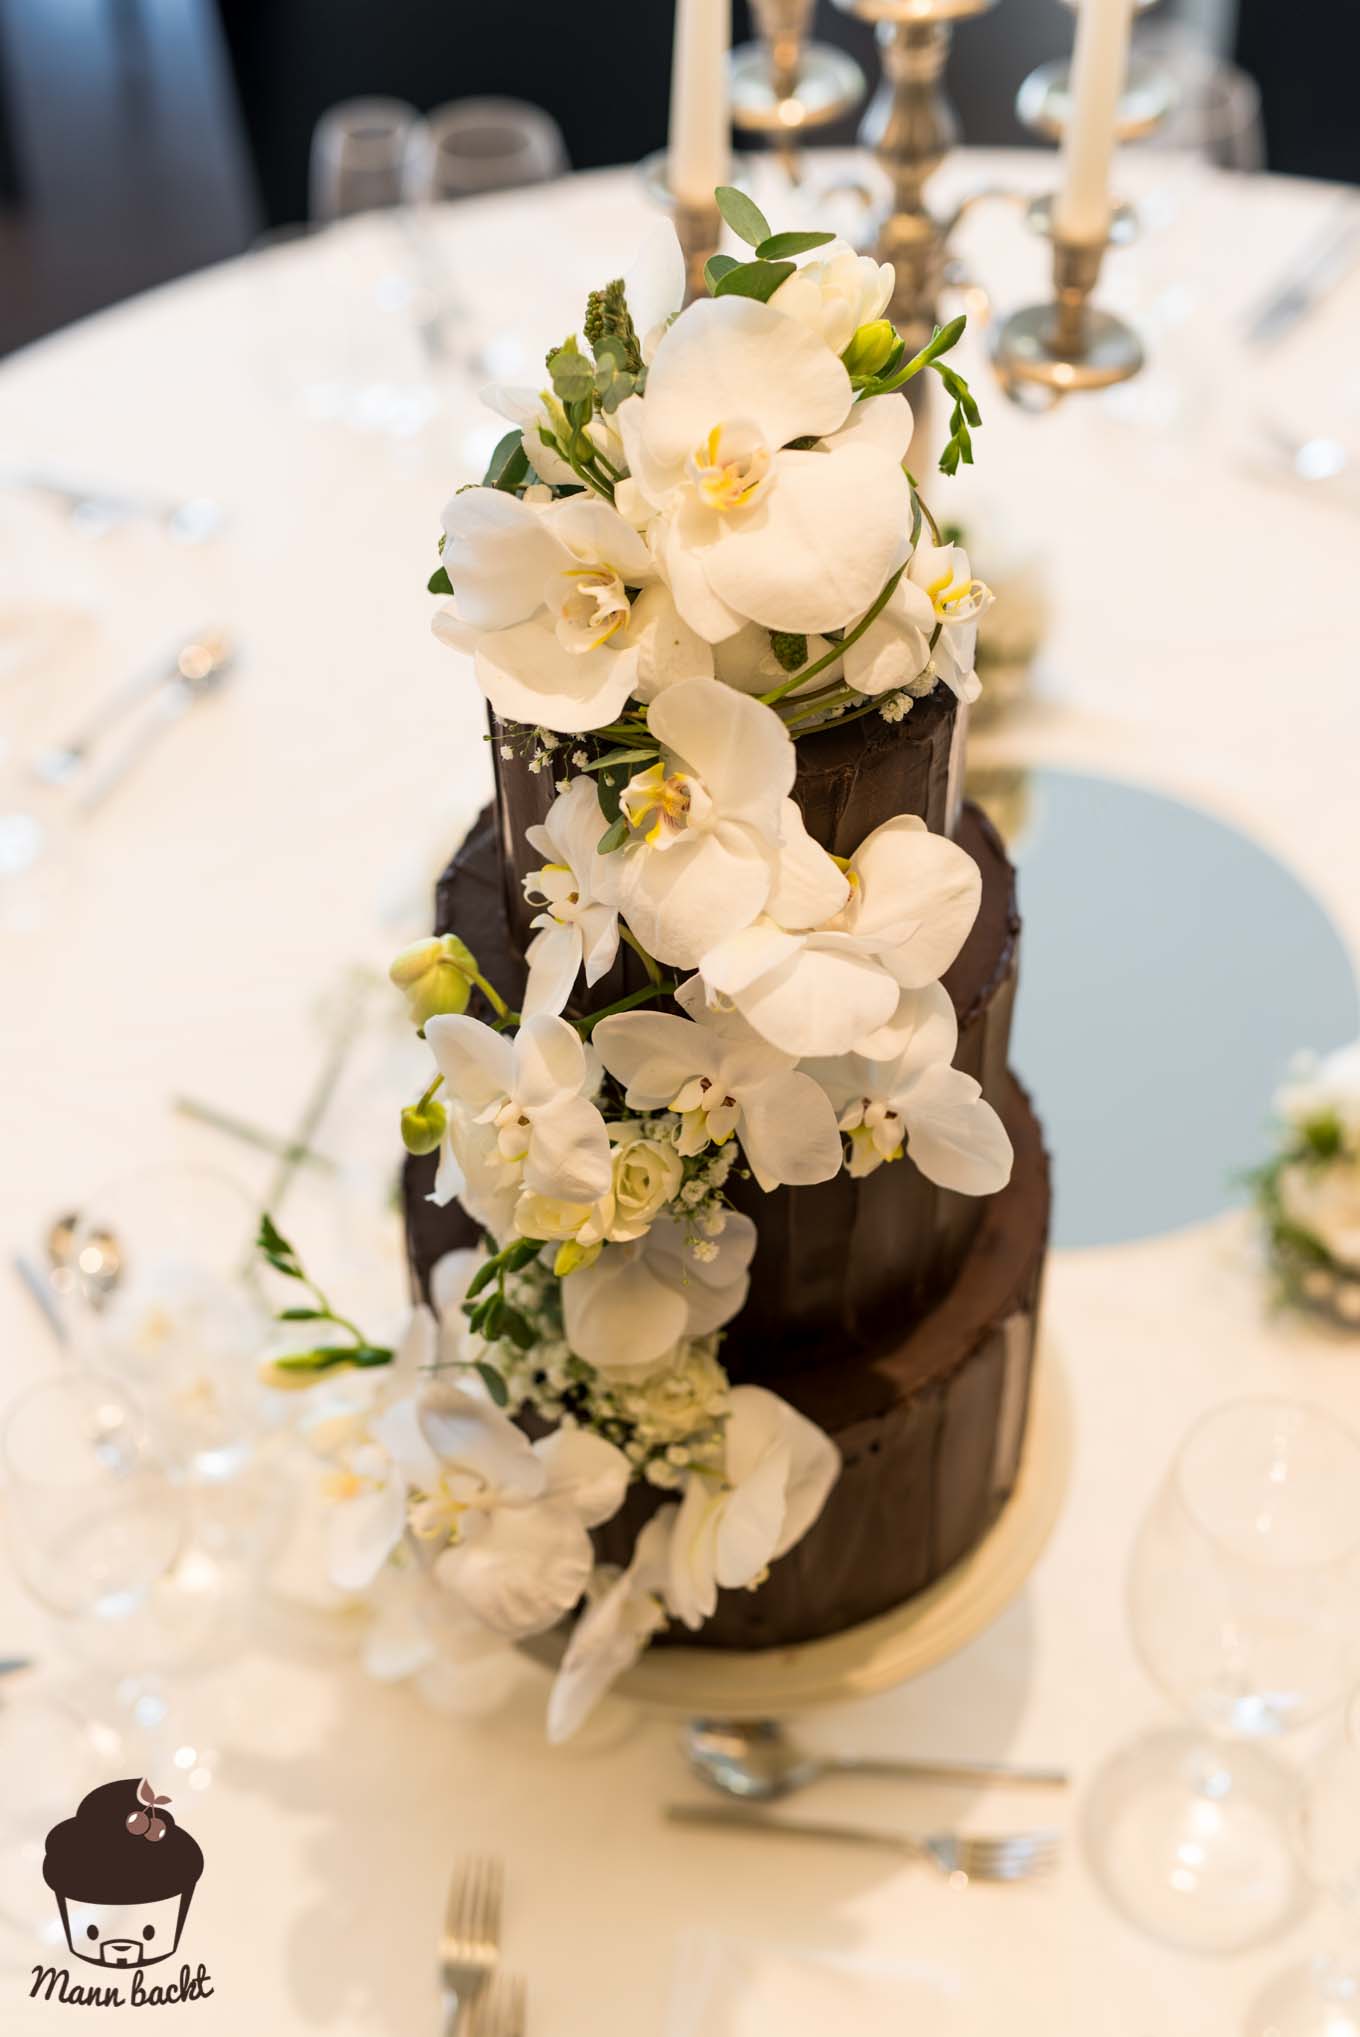 Mann backt Hochzeitstorte mit Orchideen Wedding Cake Orchids (4 von 7)